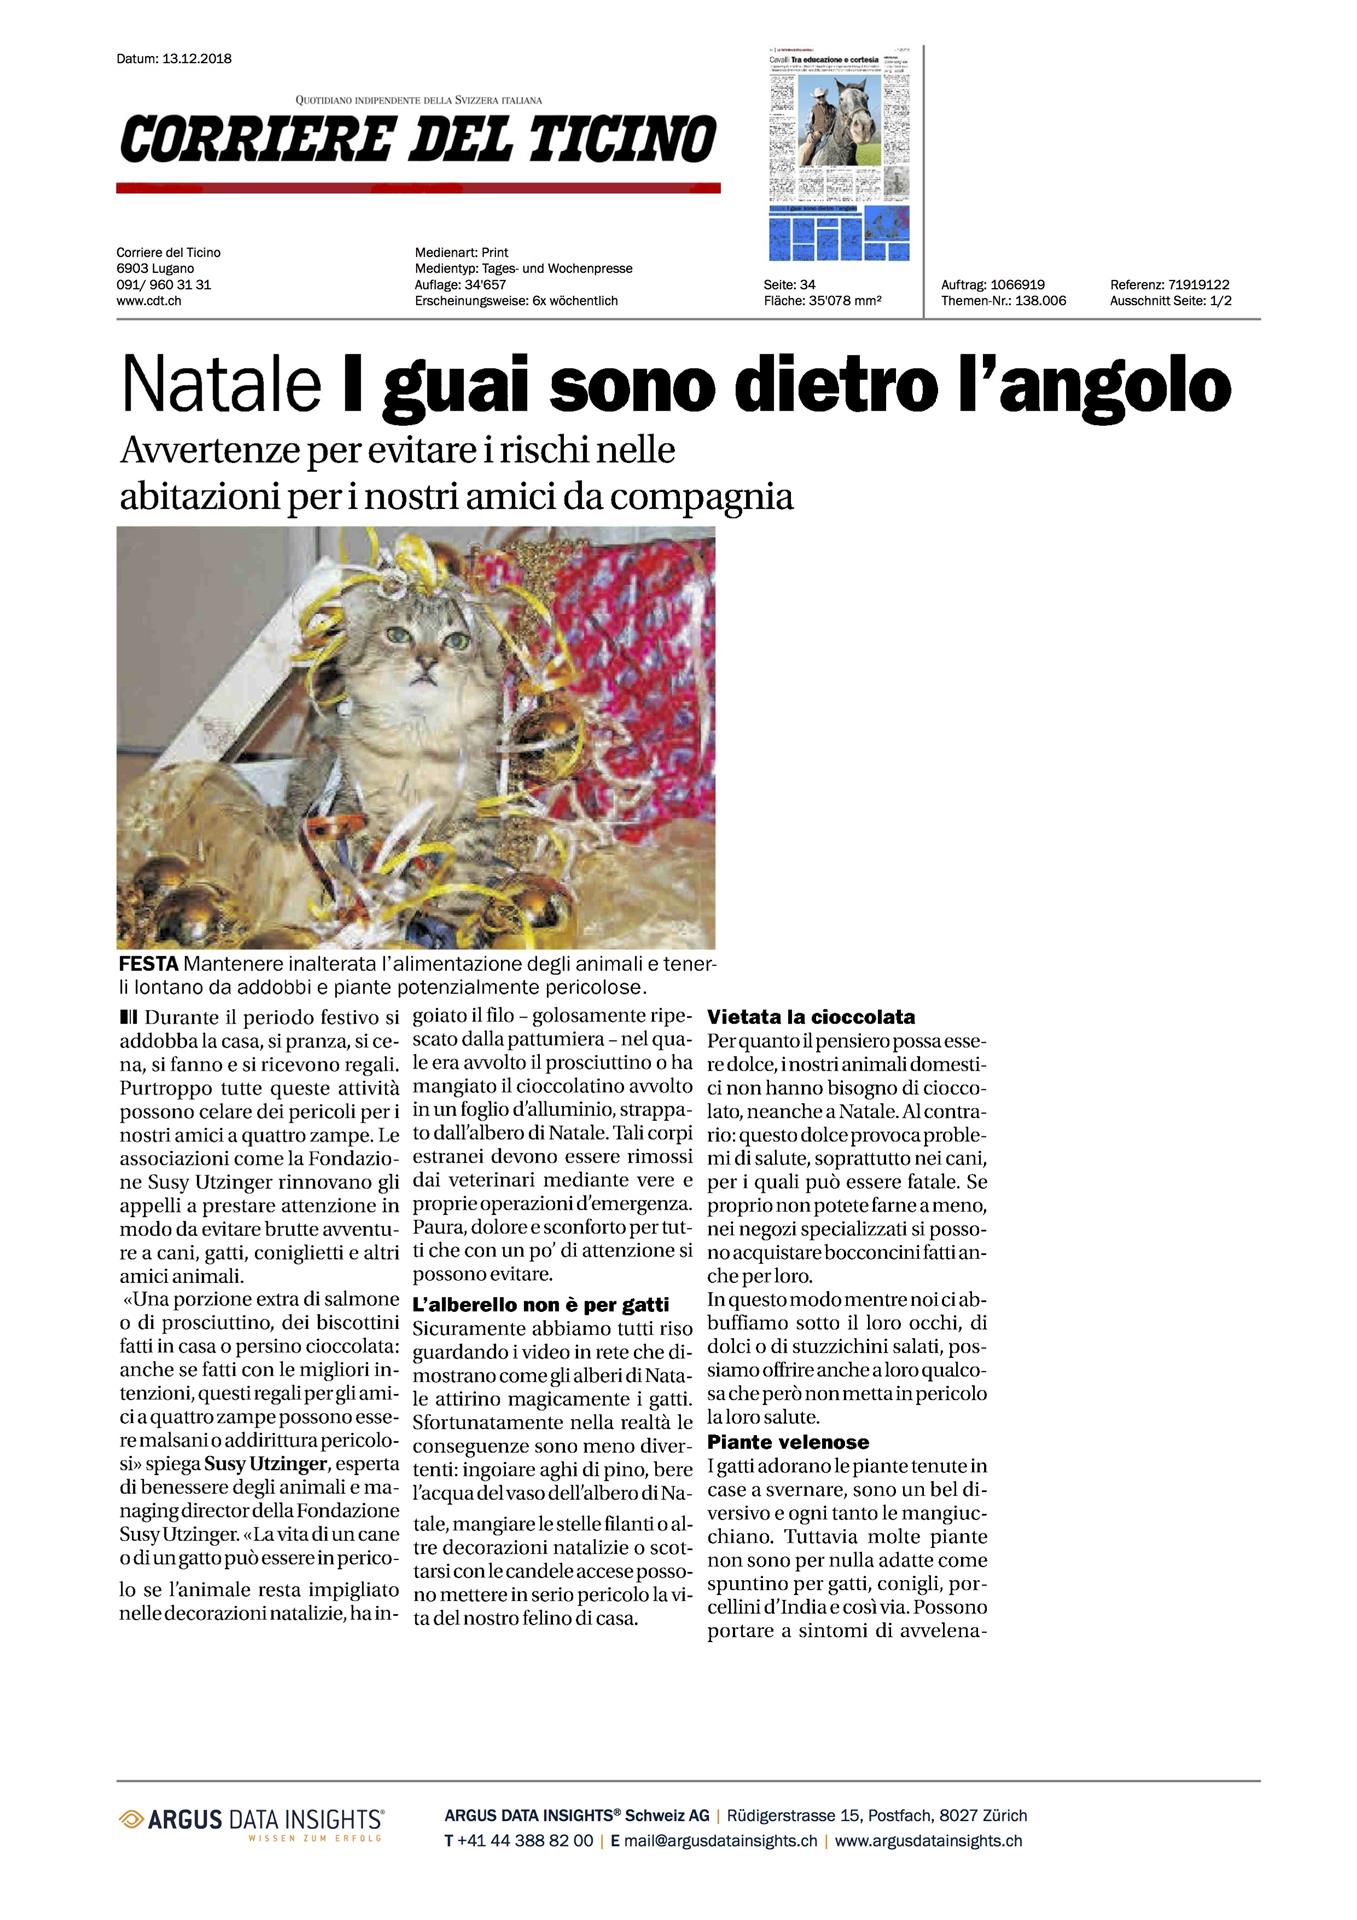 Corriere del Ticino - Dezember 2018